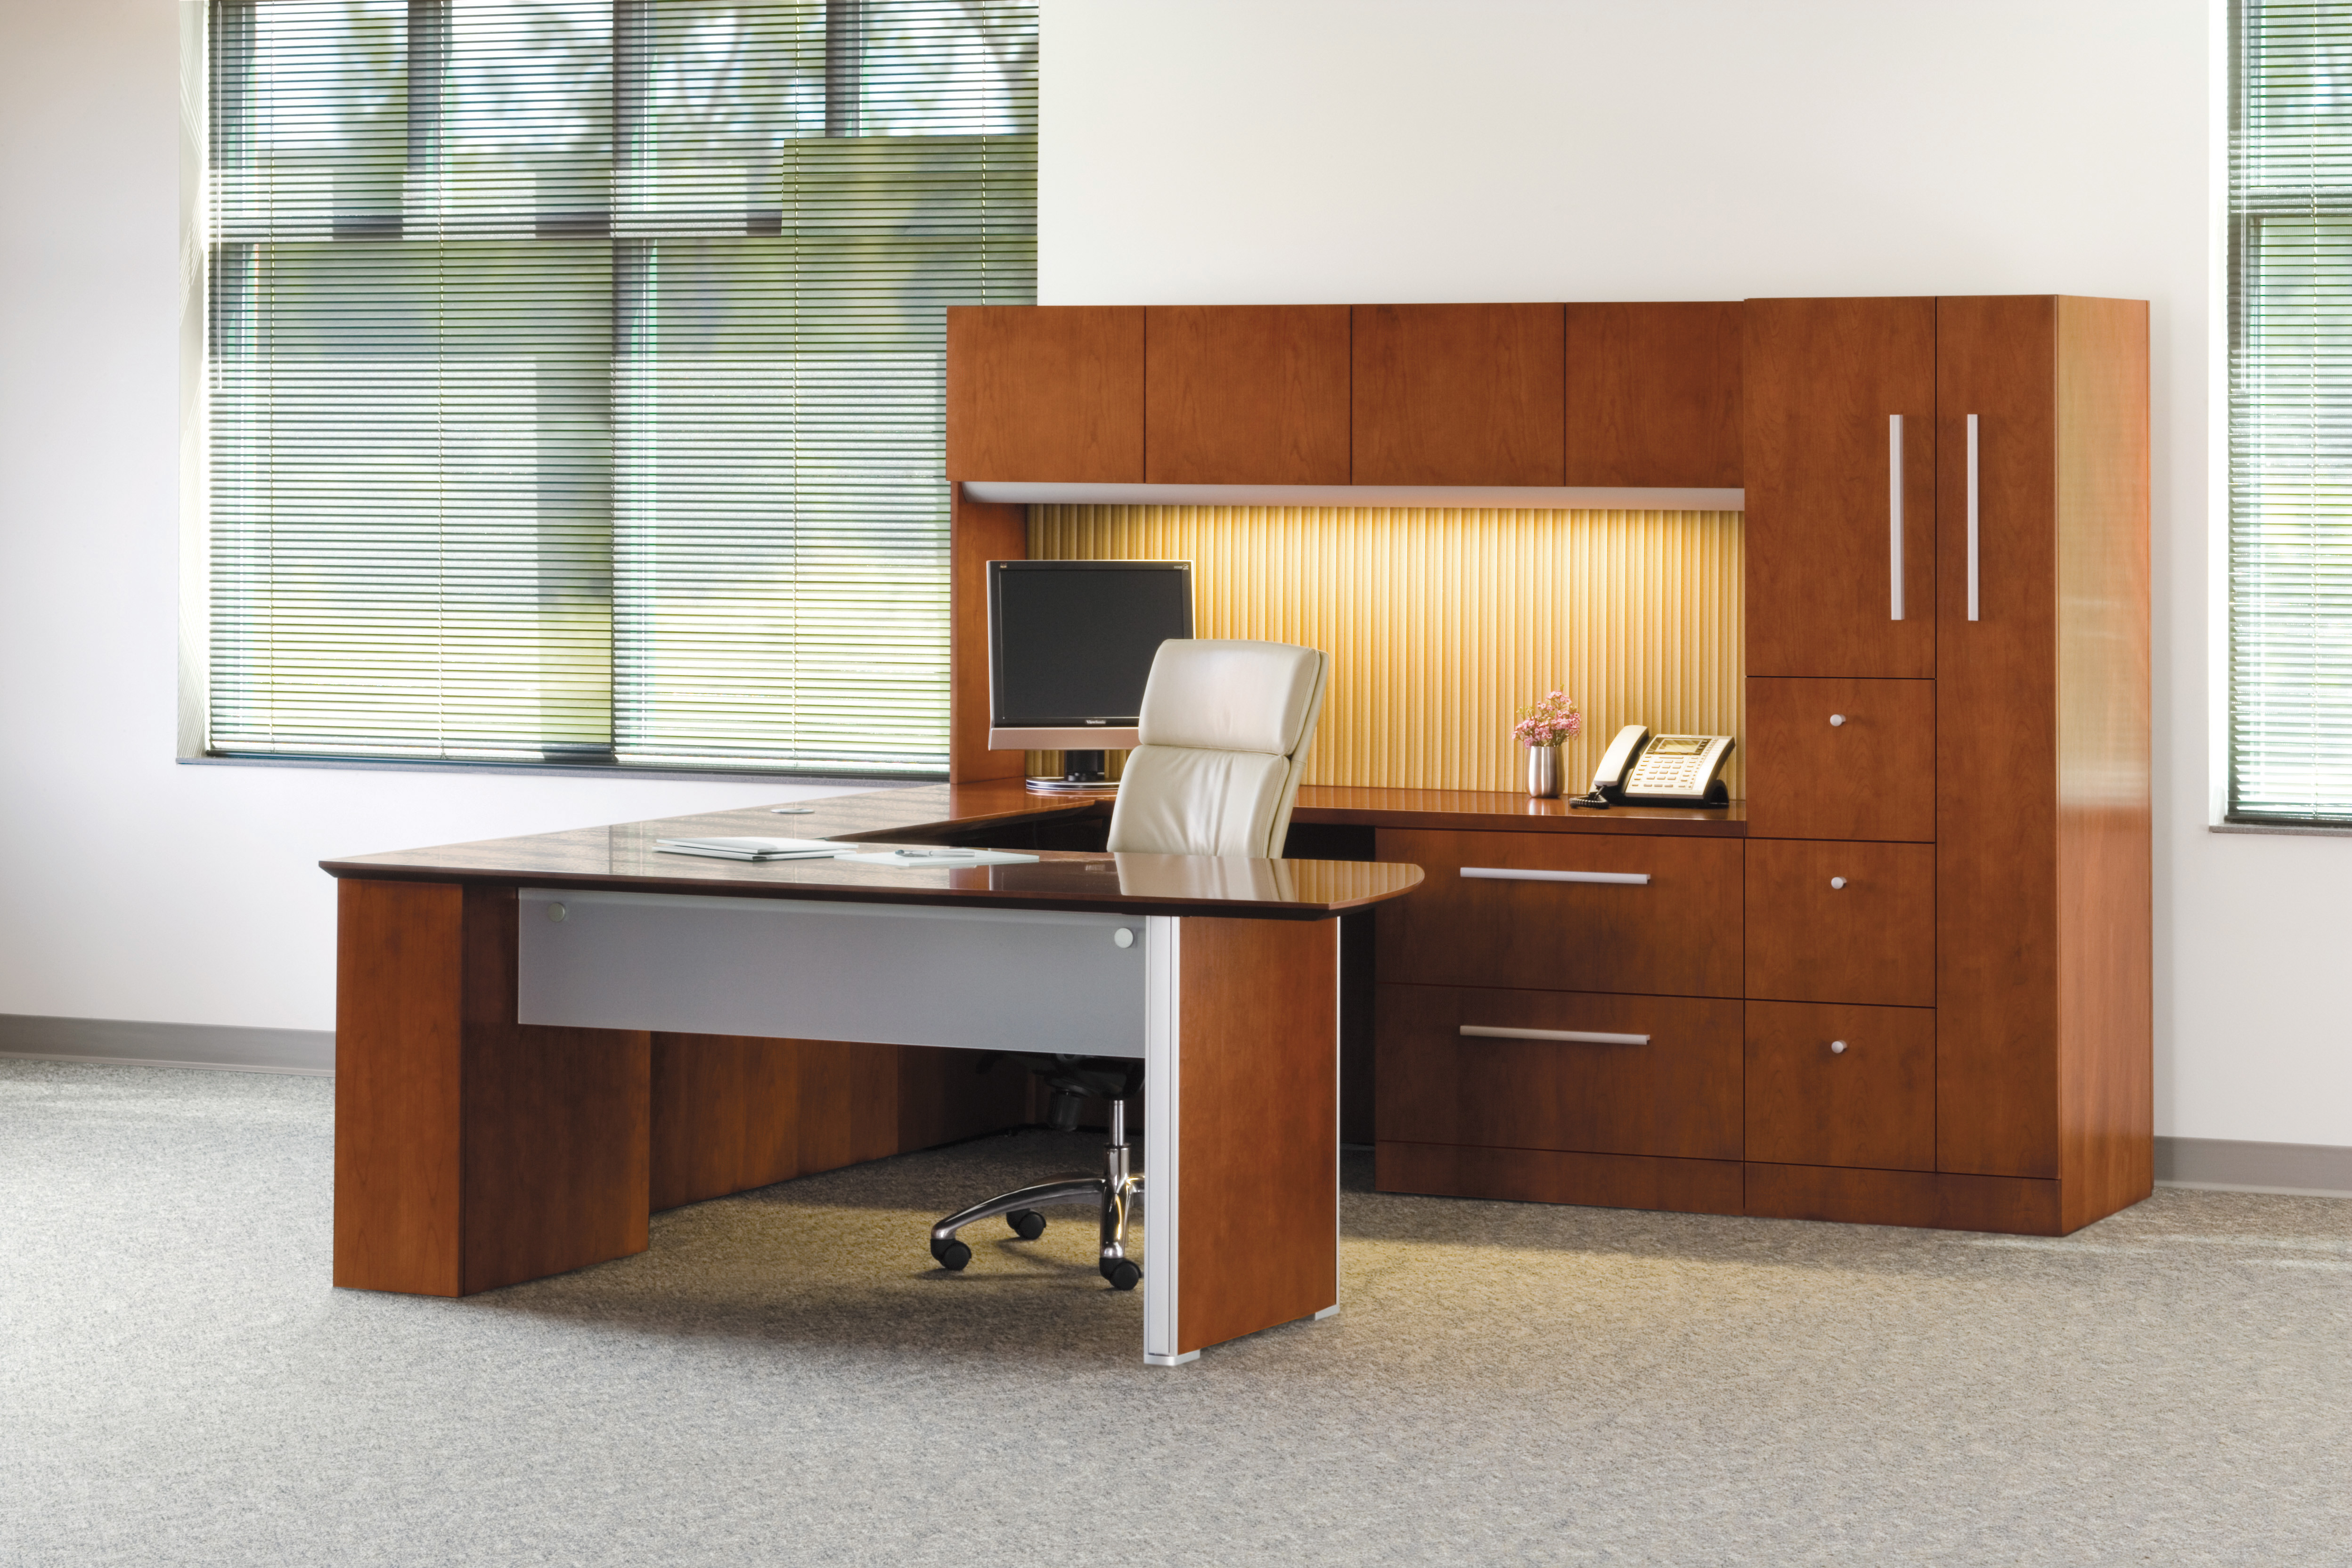 Best ideas about Executive Office Furniture
. Save or Pin Executive Desks Cincinnati Executive fice Furniture Now.